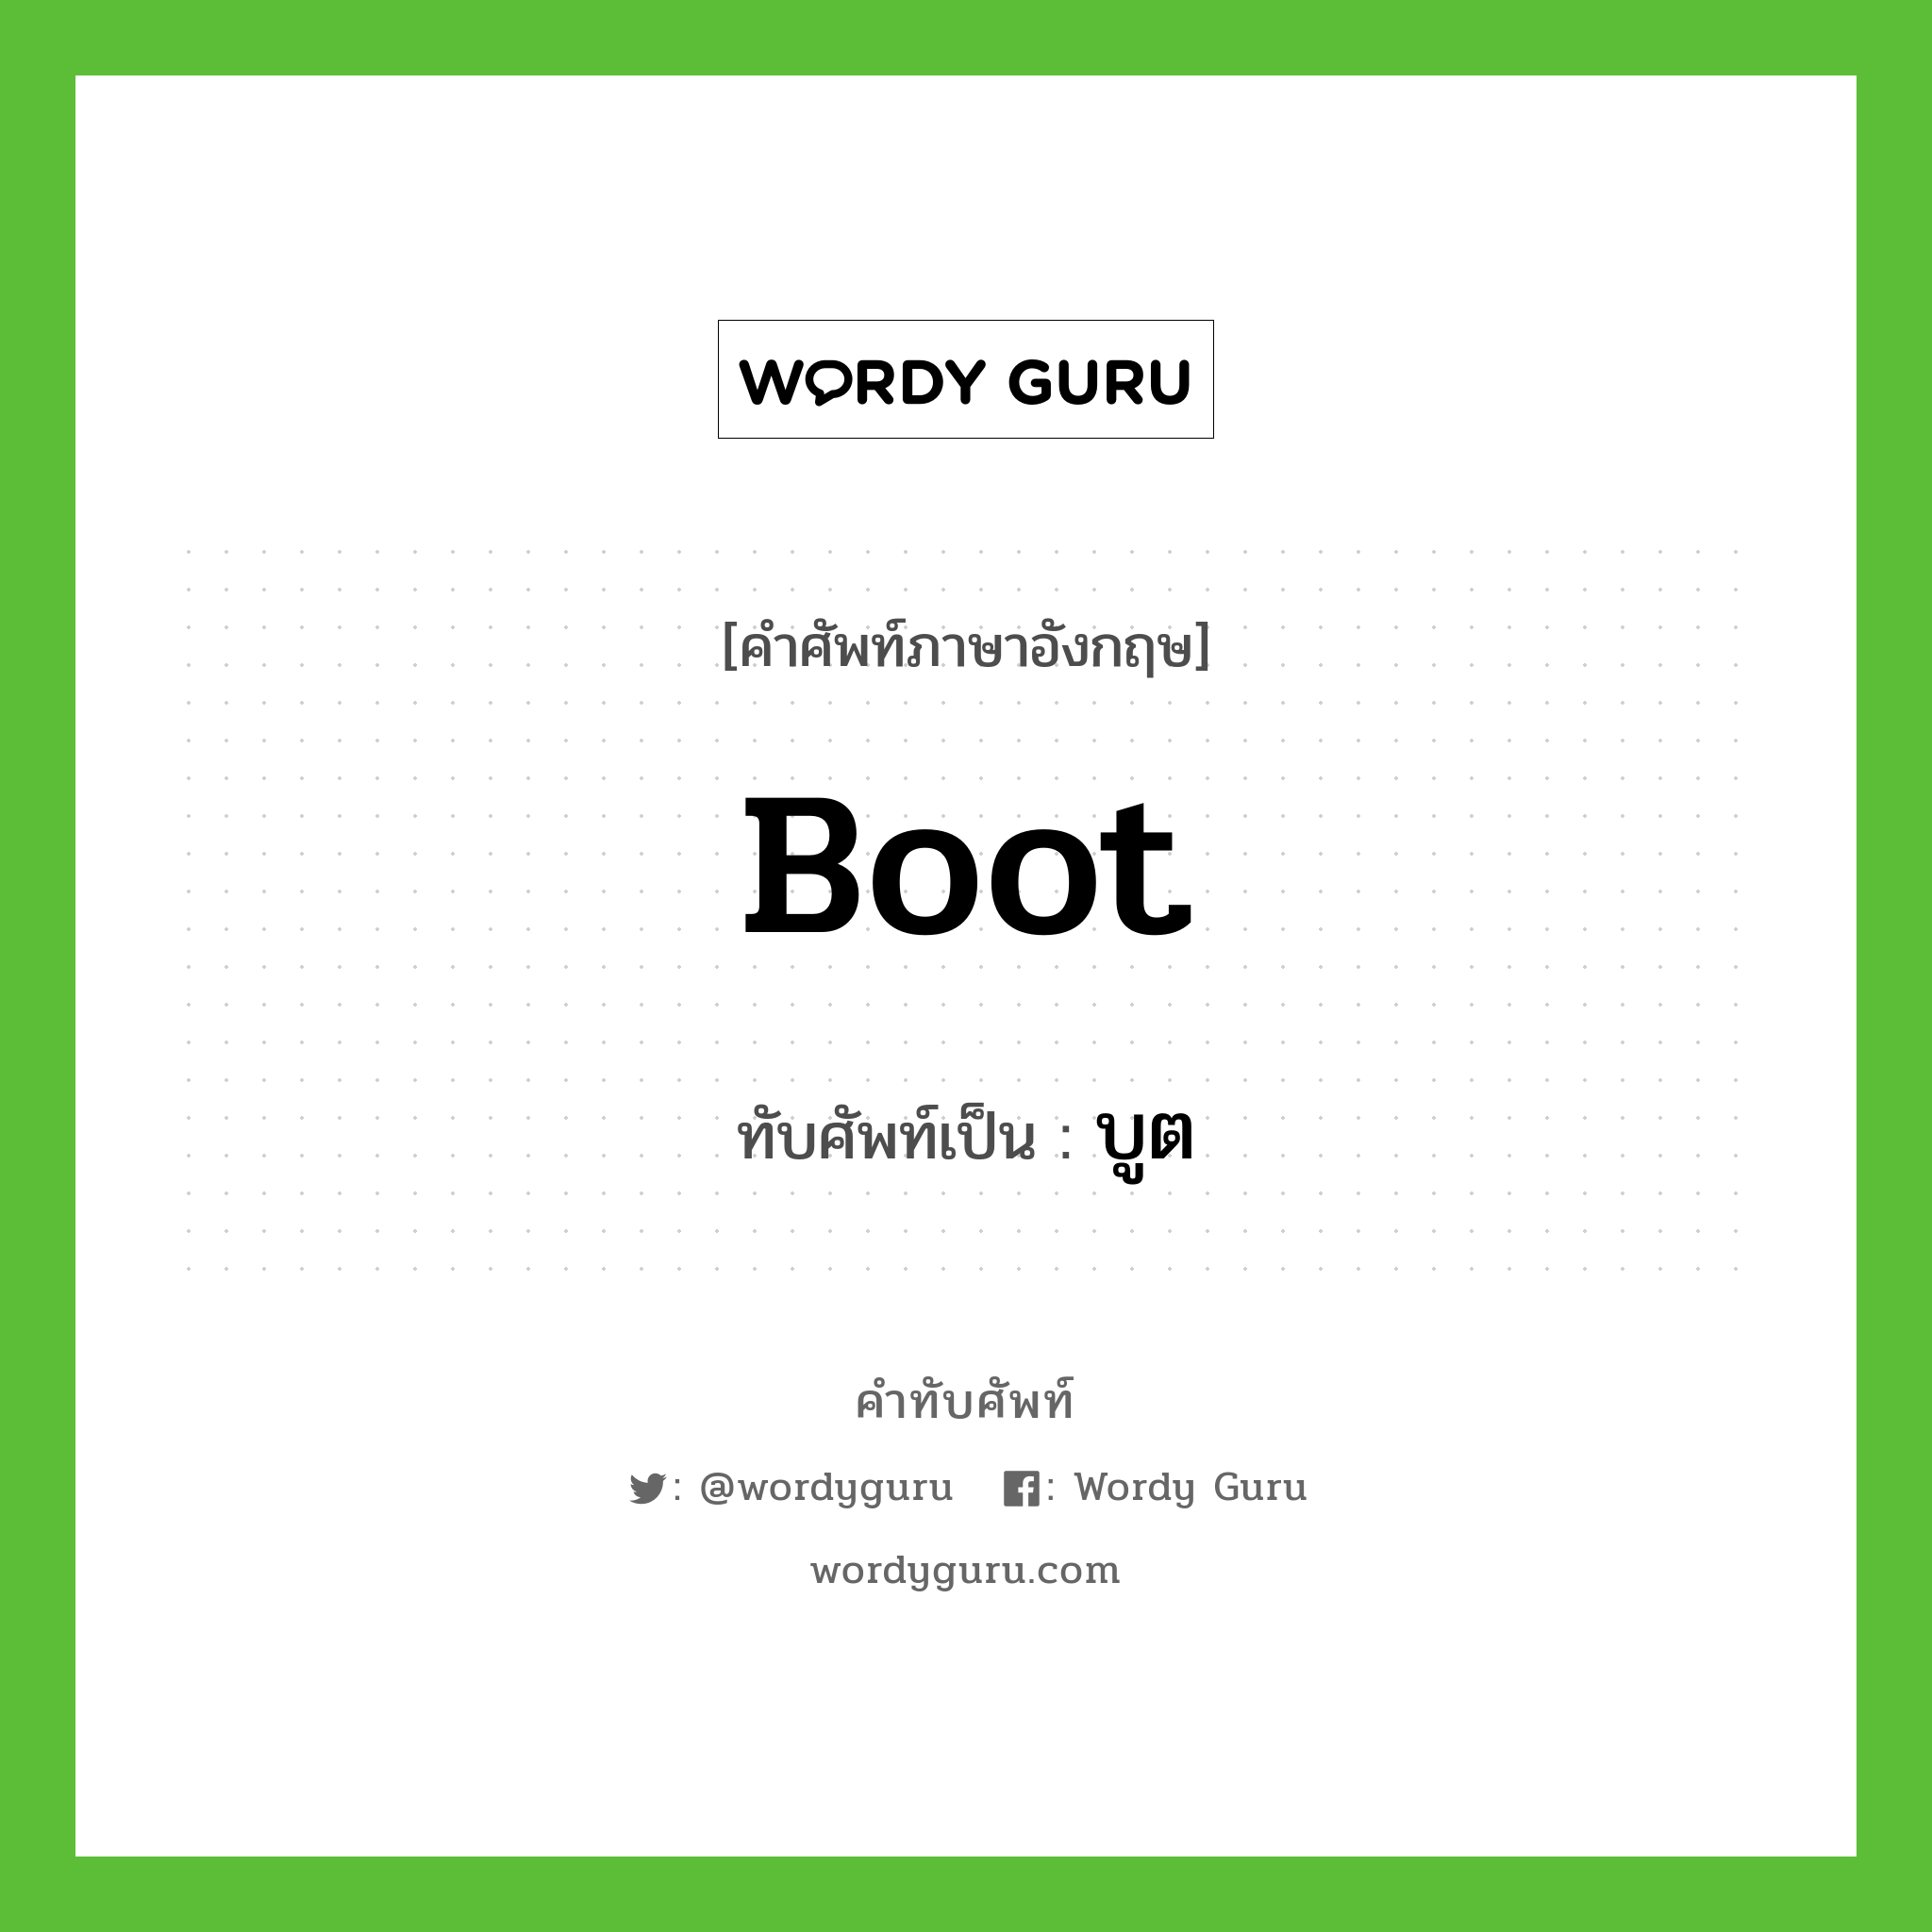 boot เขียนเป็นคำไทยว่าอะไร?, คำศัพท์ภาษาอังกฤษ boot ทับศัพท์เป็น บูต